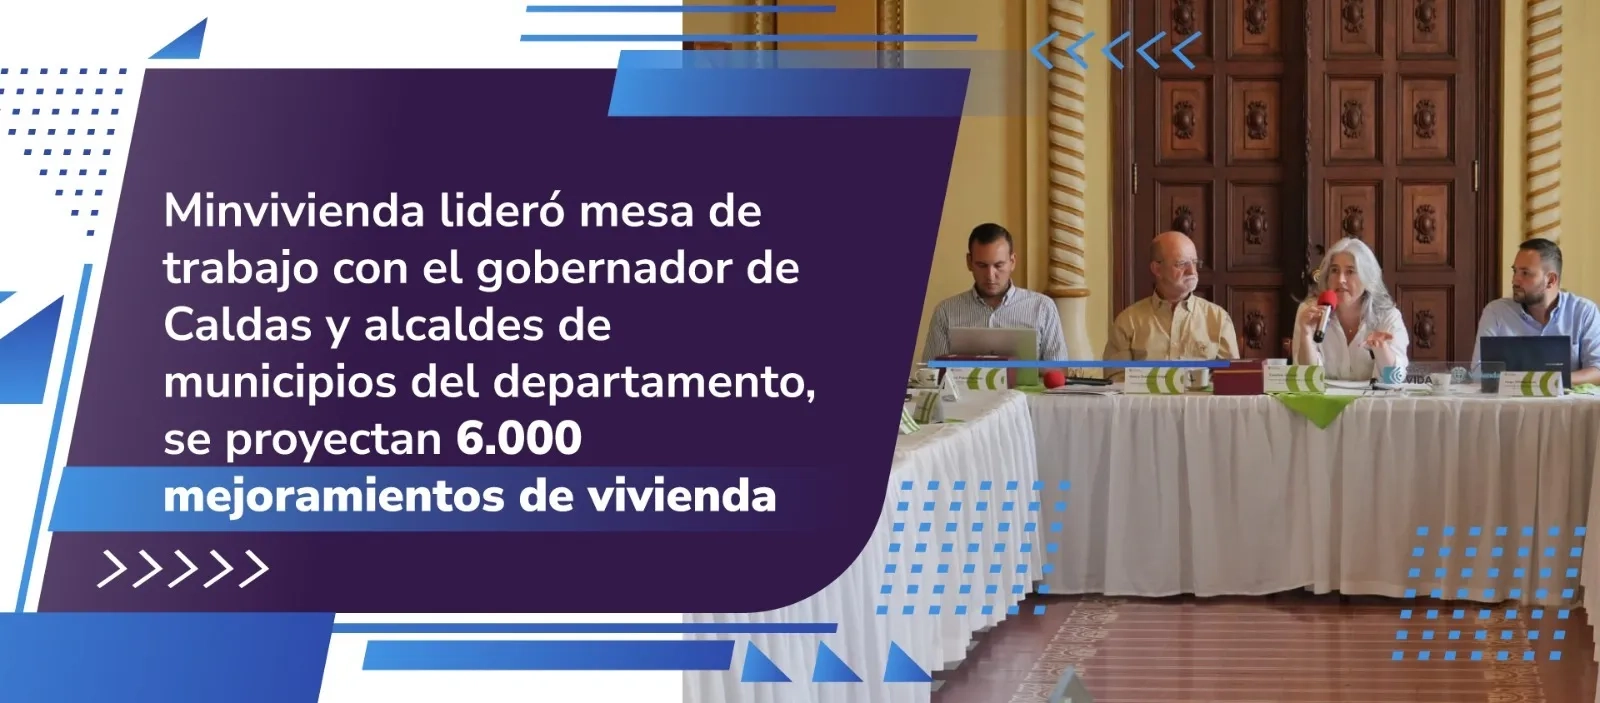 Minvivienda lideró mesa de trabajo con el gobernador de Caldas y alcaldes de municipios del departamento, se proyectan 6.000 mejoramientos de vivienda